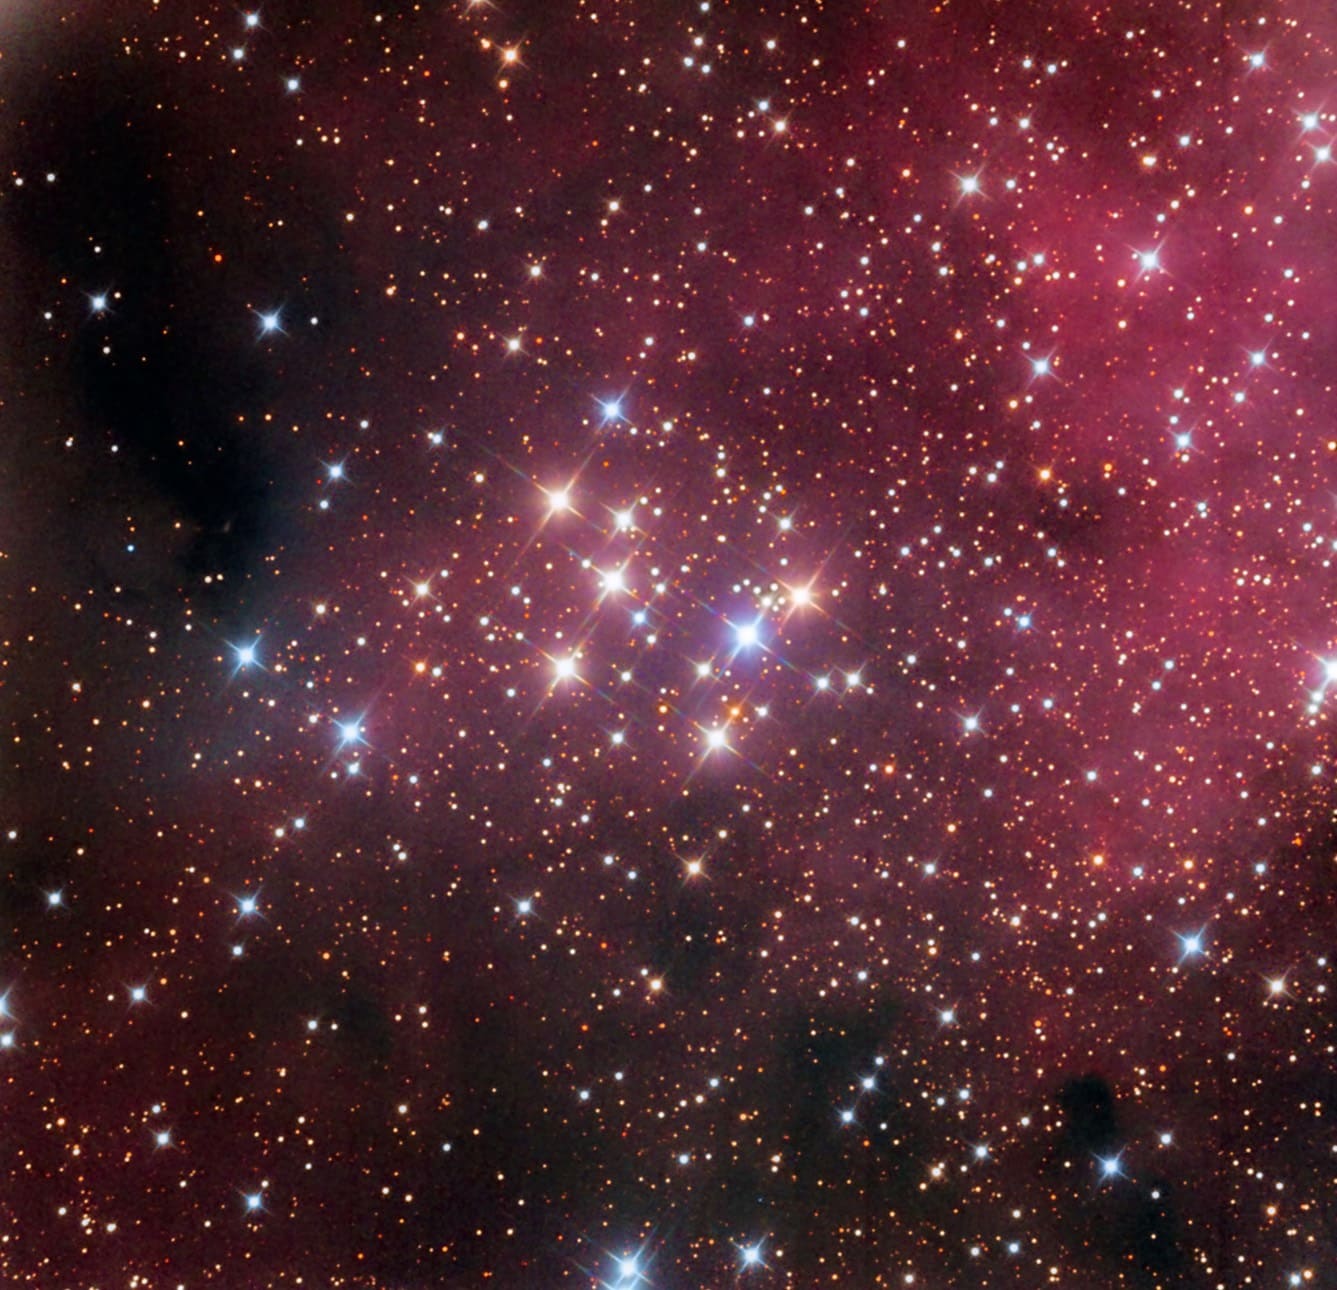 Rund ein Dutzend Sterne bilden den offenen Sternhaufen Messier 29; ihre Verteilung erinnert an die hellen Sterne der Plejaden